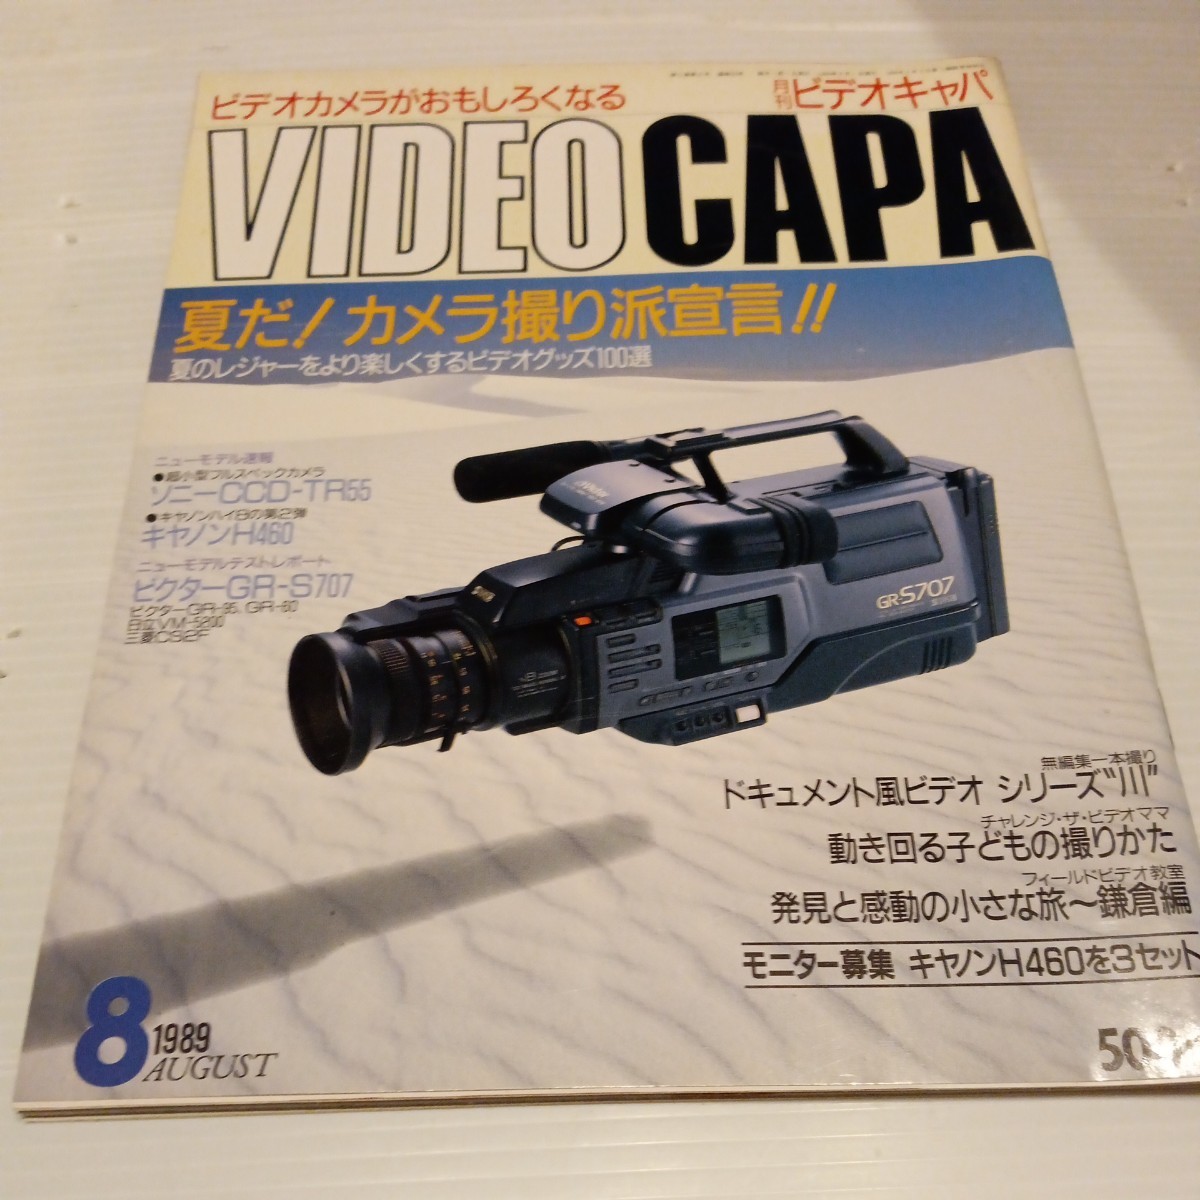 月刊 ビデオキャパ 1989年8月号 VIDEO CAPA